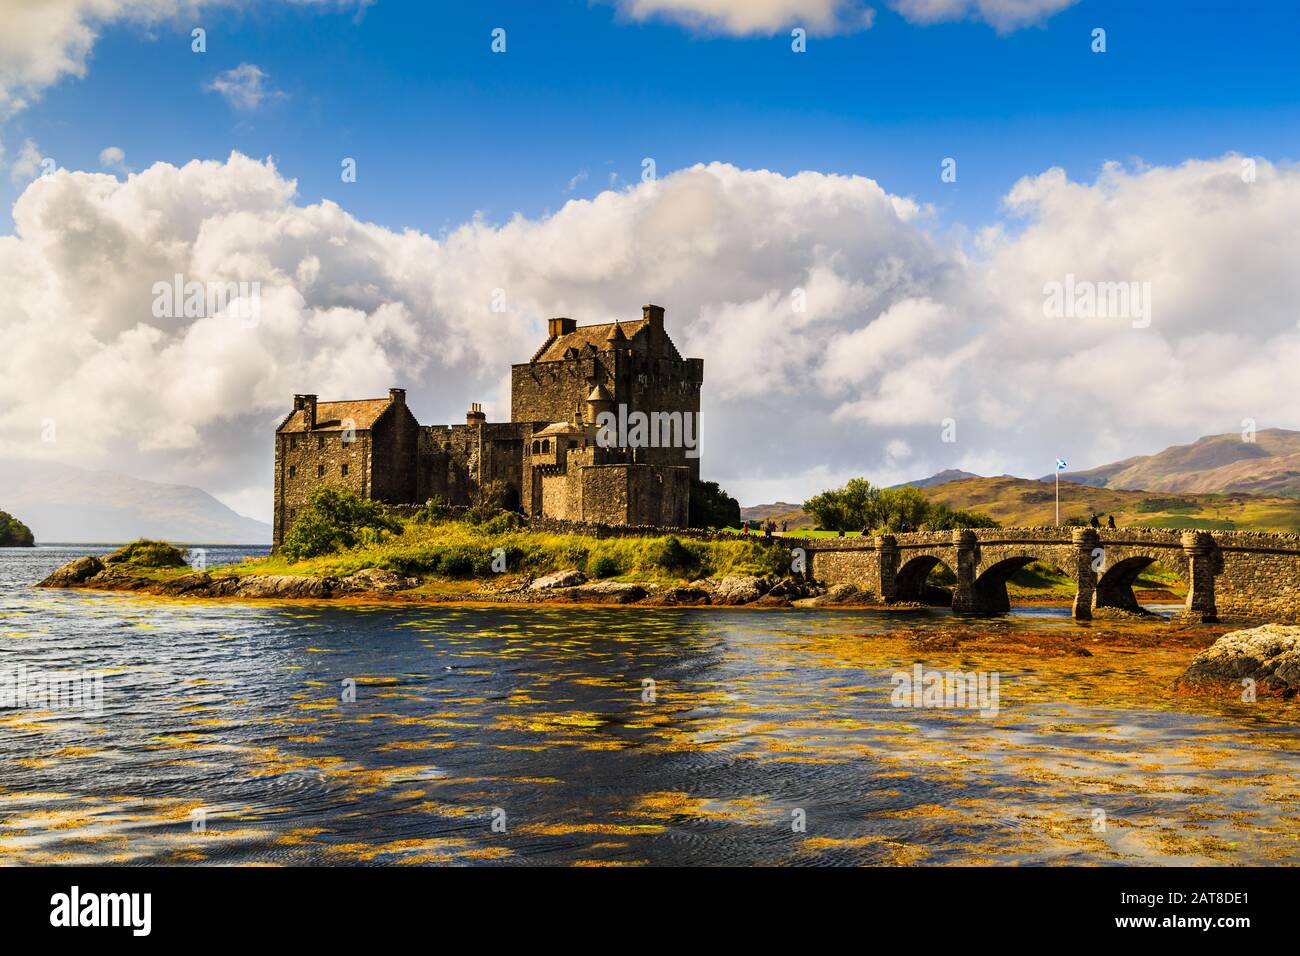 Eilean Donan Castle in Ross-shire, Scotland Stock Photo